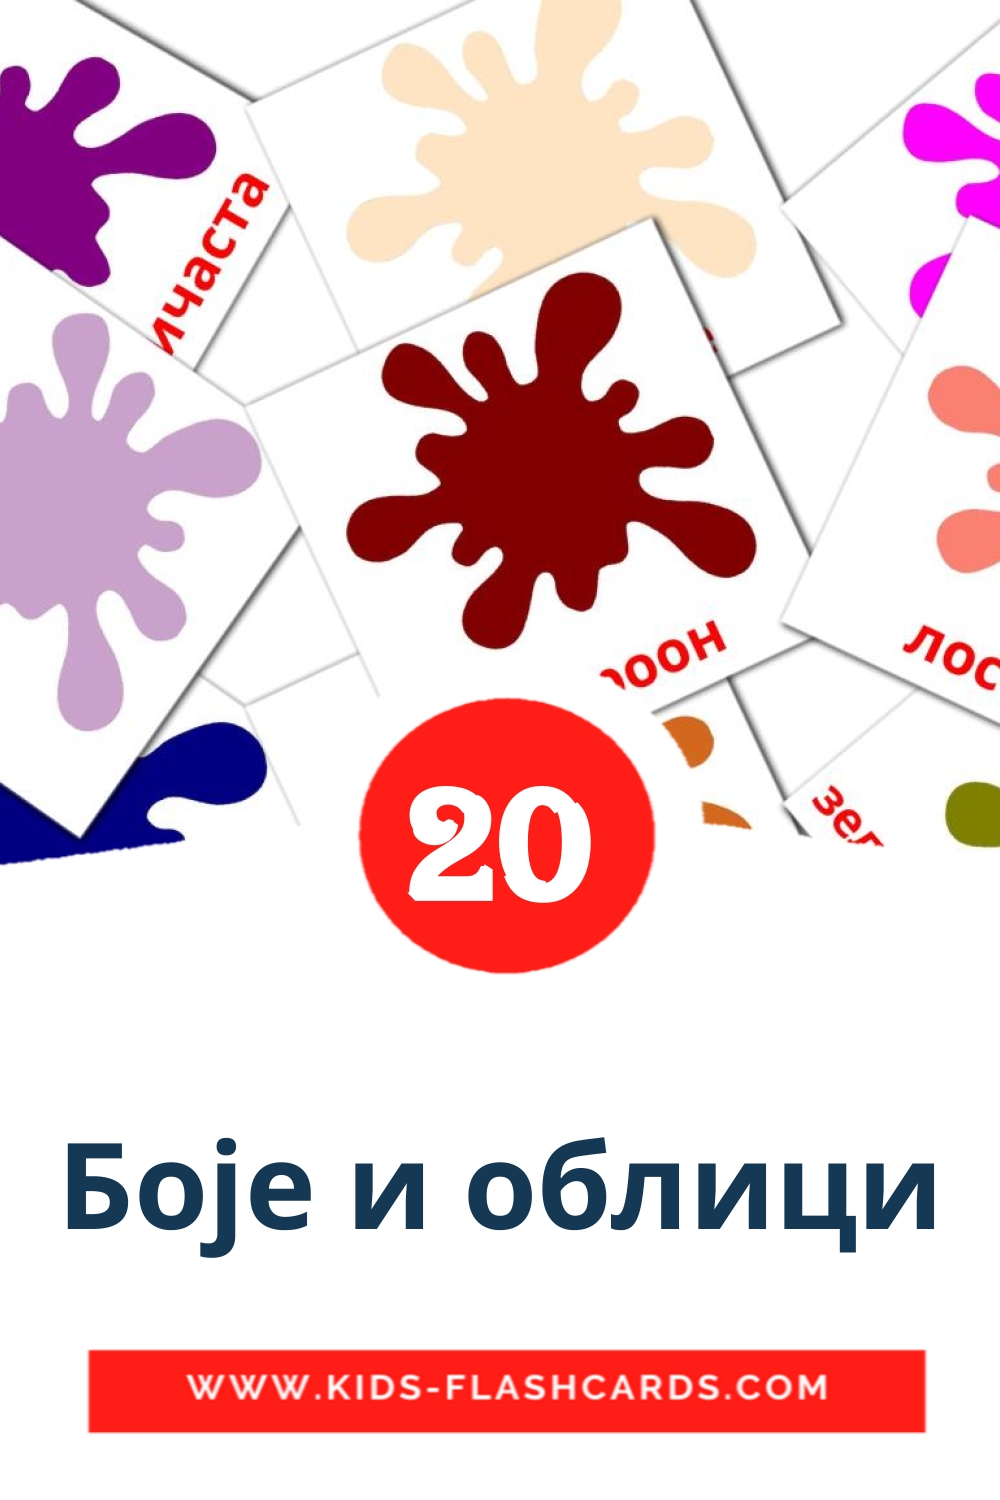 20 tarjetas didacticas de Боје и облици para el jardín de infancia en serbio(cirílico)